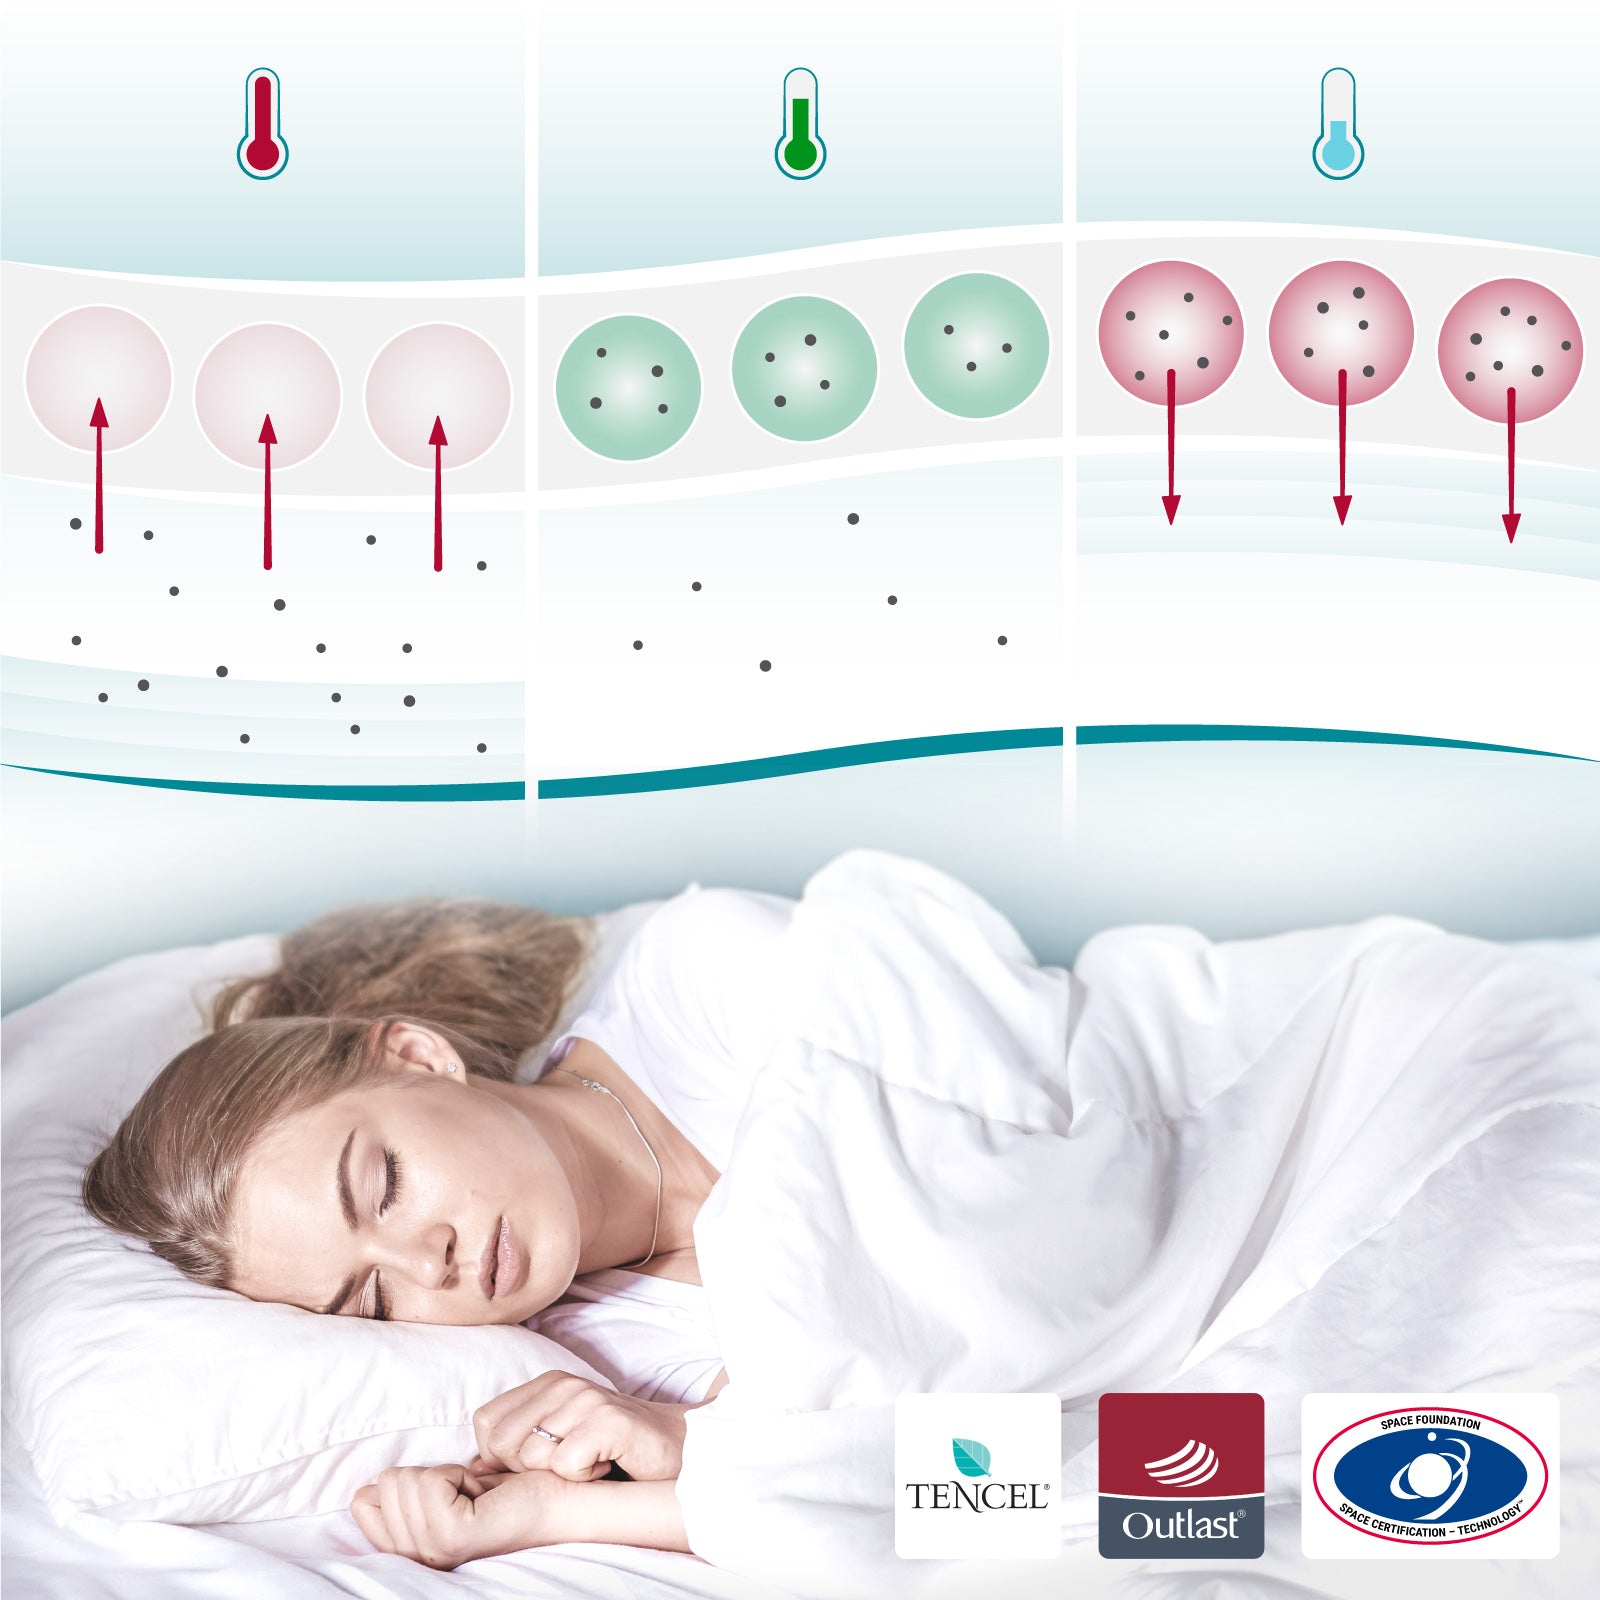 Temperaturregulierende Bettdecke (1000g-1200g) - COOL.XPRESSION Sleepcool schlafen - Weni – besser – Einfach